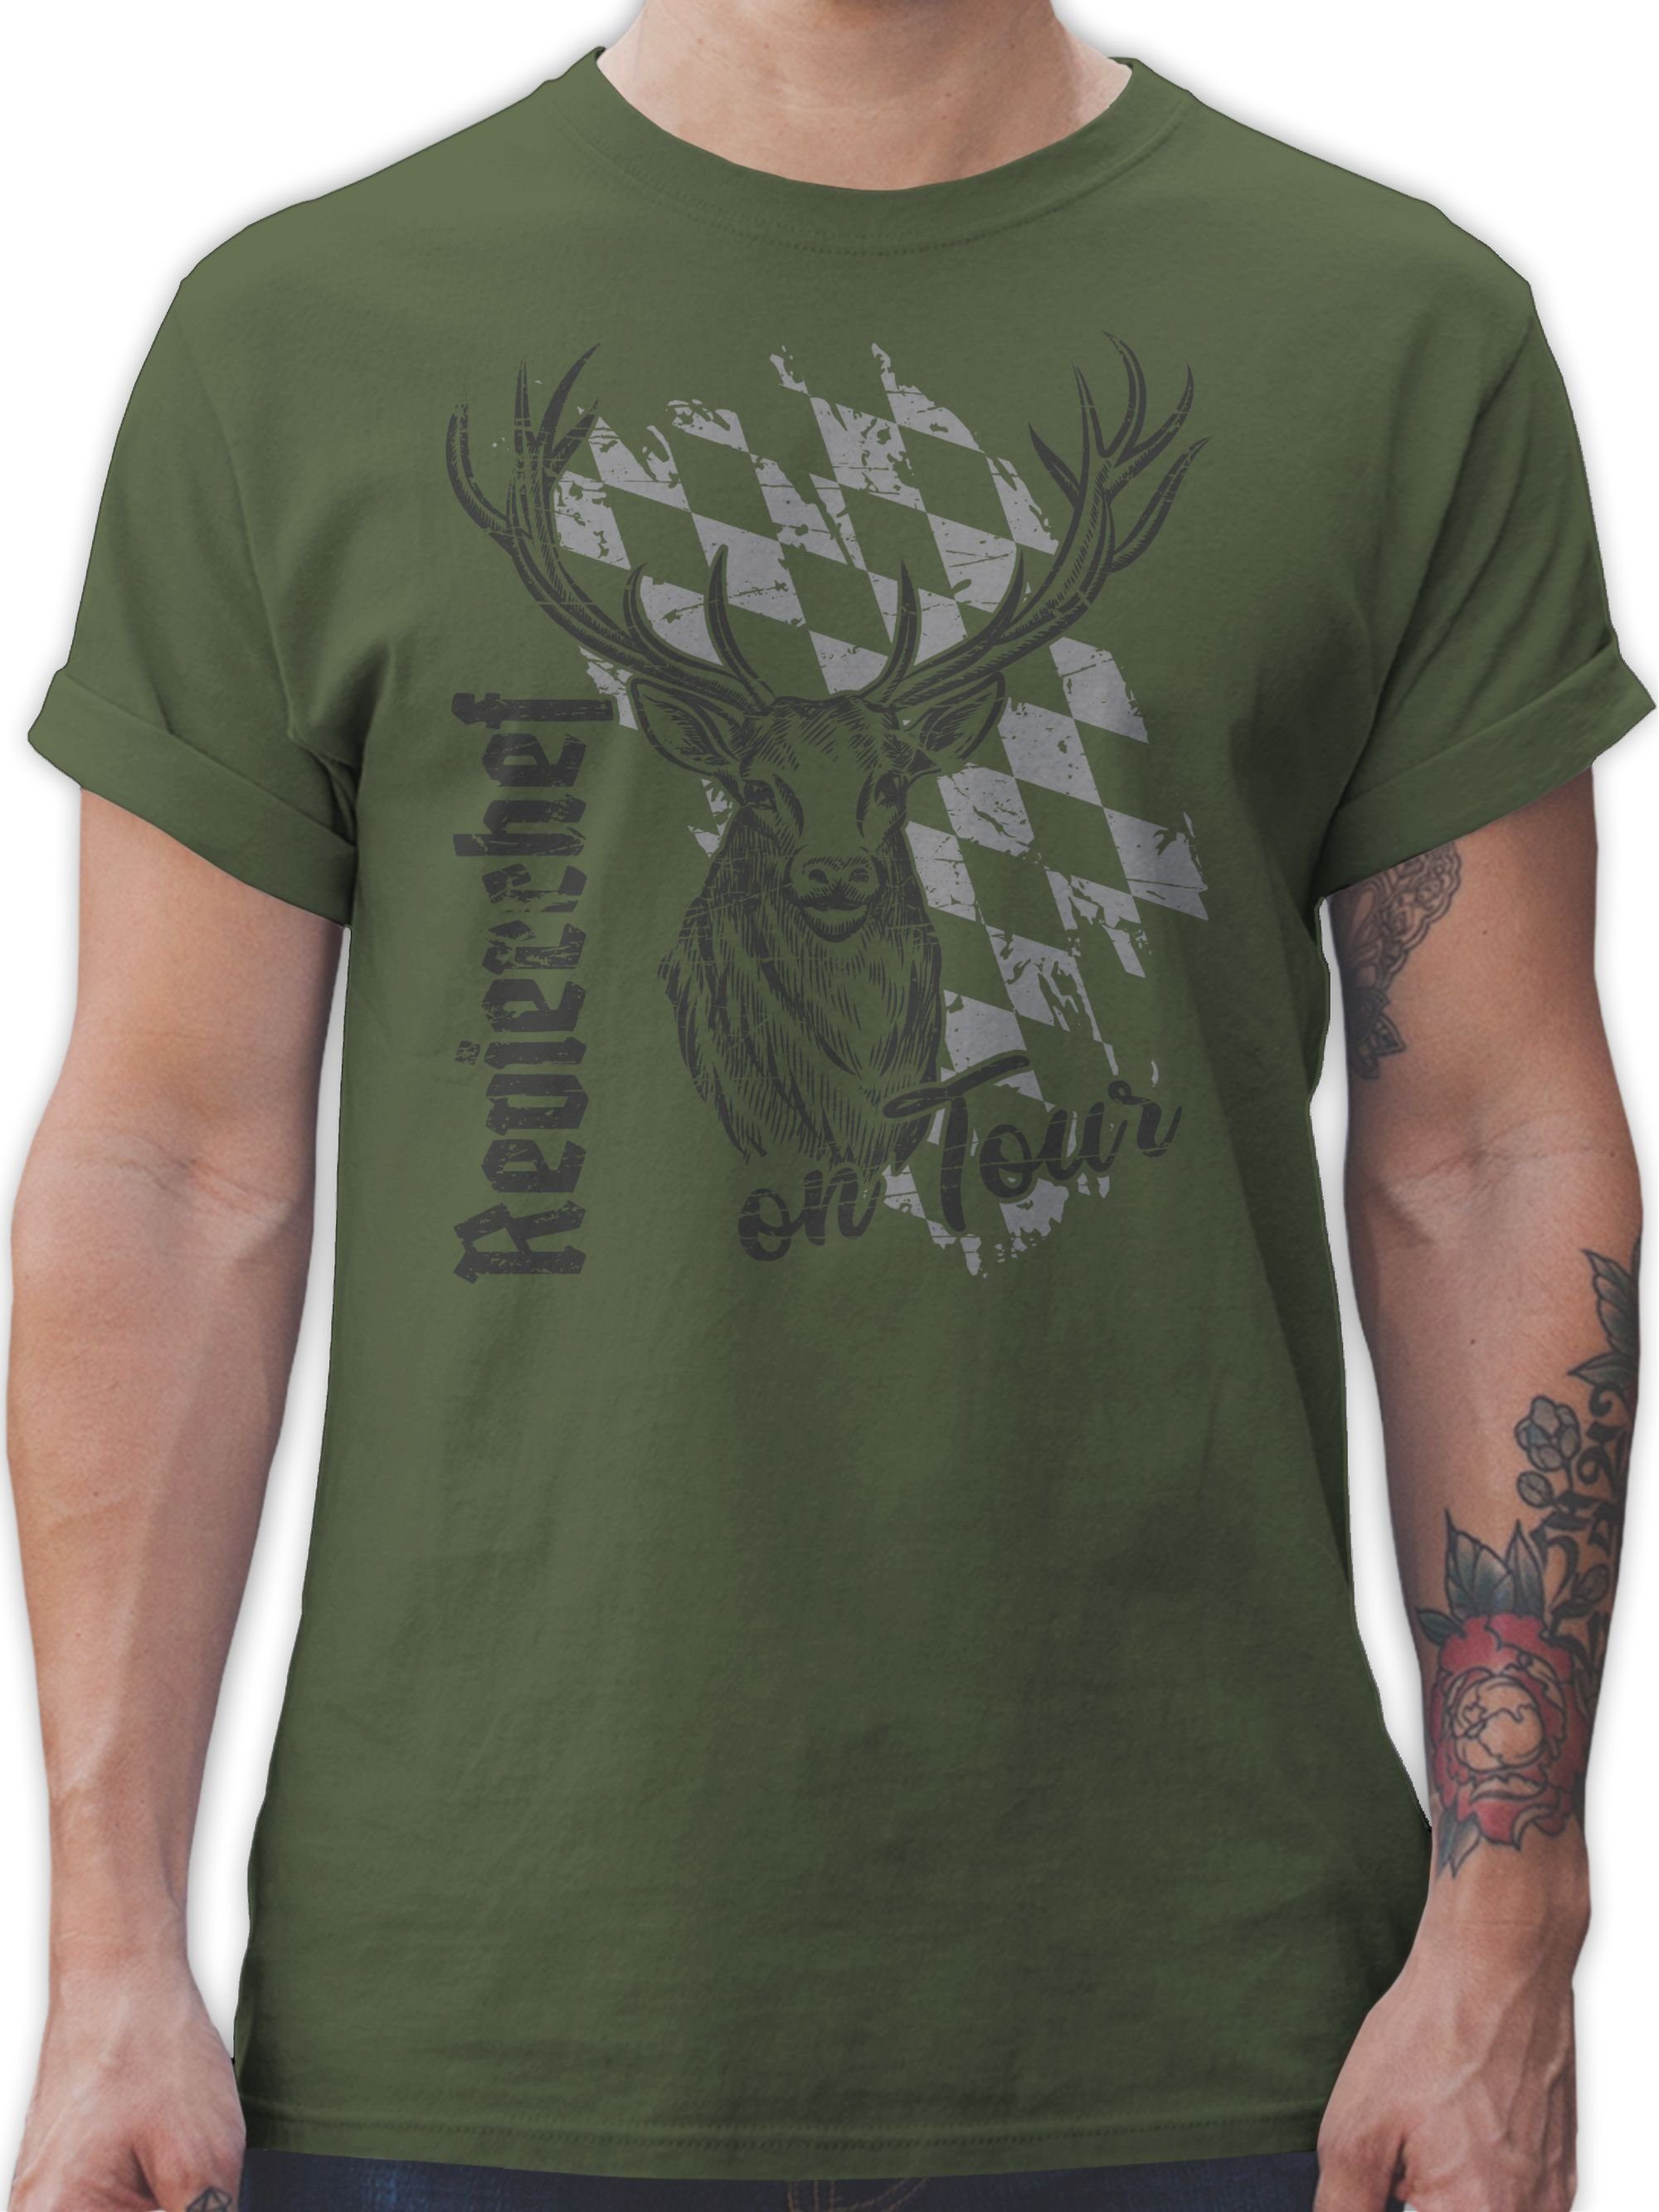 Hirsch T-Shirt Herren Mode Trachten Volksfest Grün Bayern 01 Shirtracer Oktoberfest Jäger Army Jagd Revierchef für